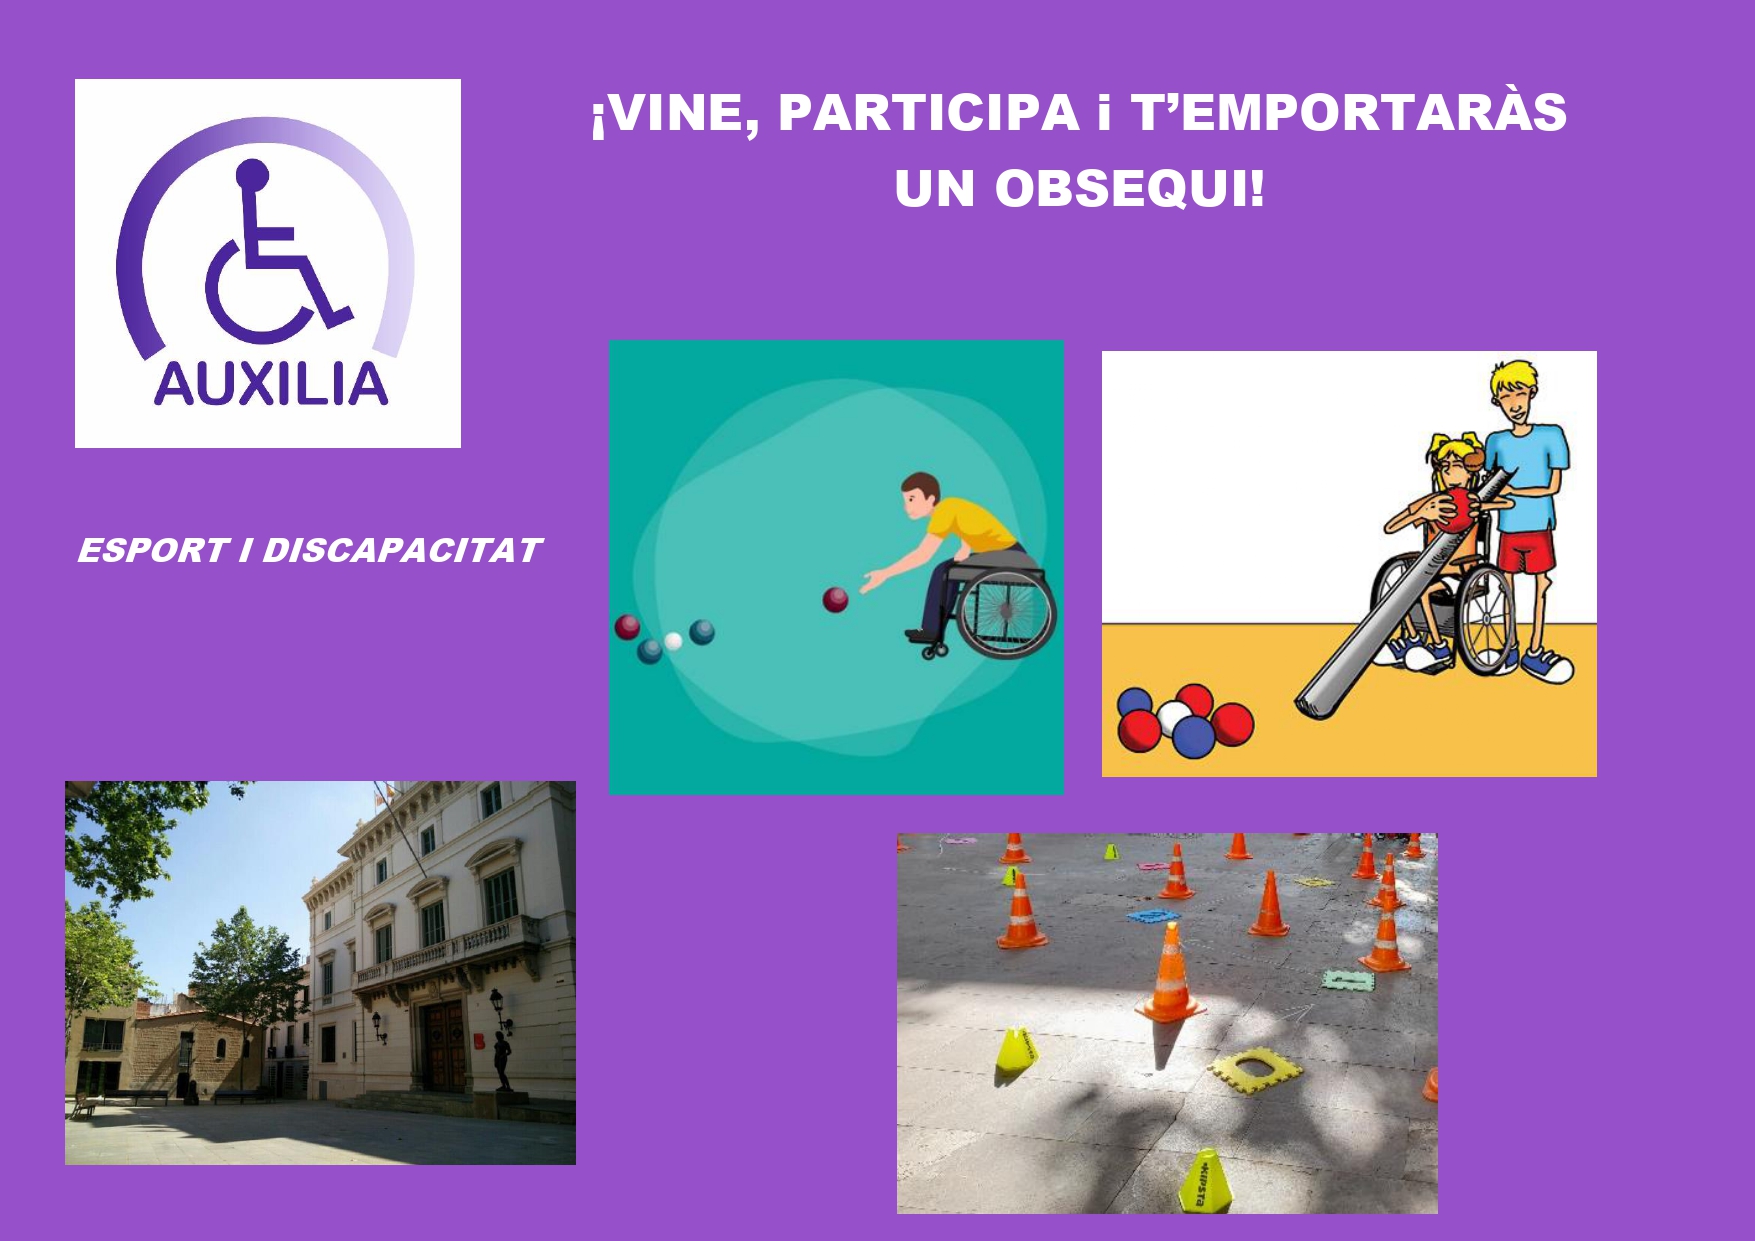 Aquest esdeveniment promou la pràctica de l’esport entre el col·lectiu amb discapacitat generant una situació d’igualtat de condicions amb la resta de la ciutadania